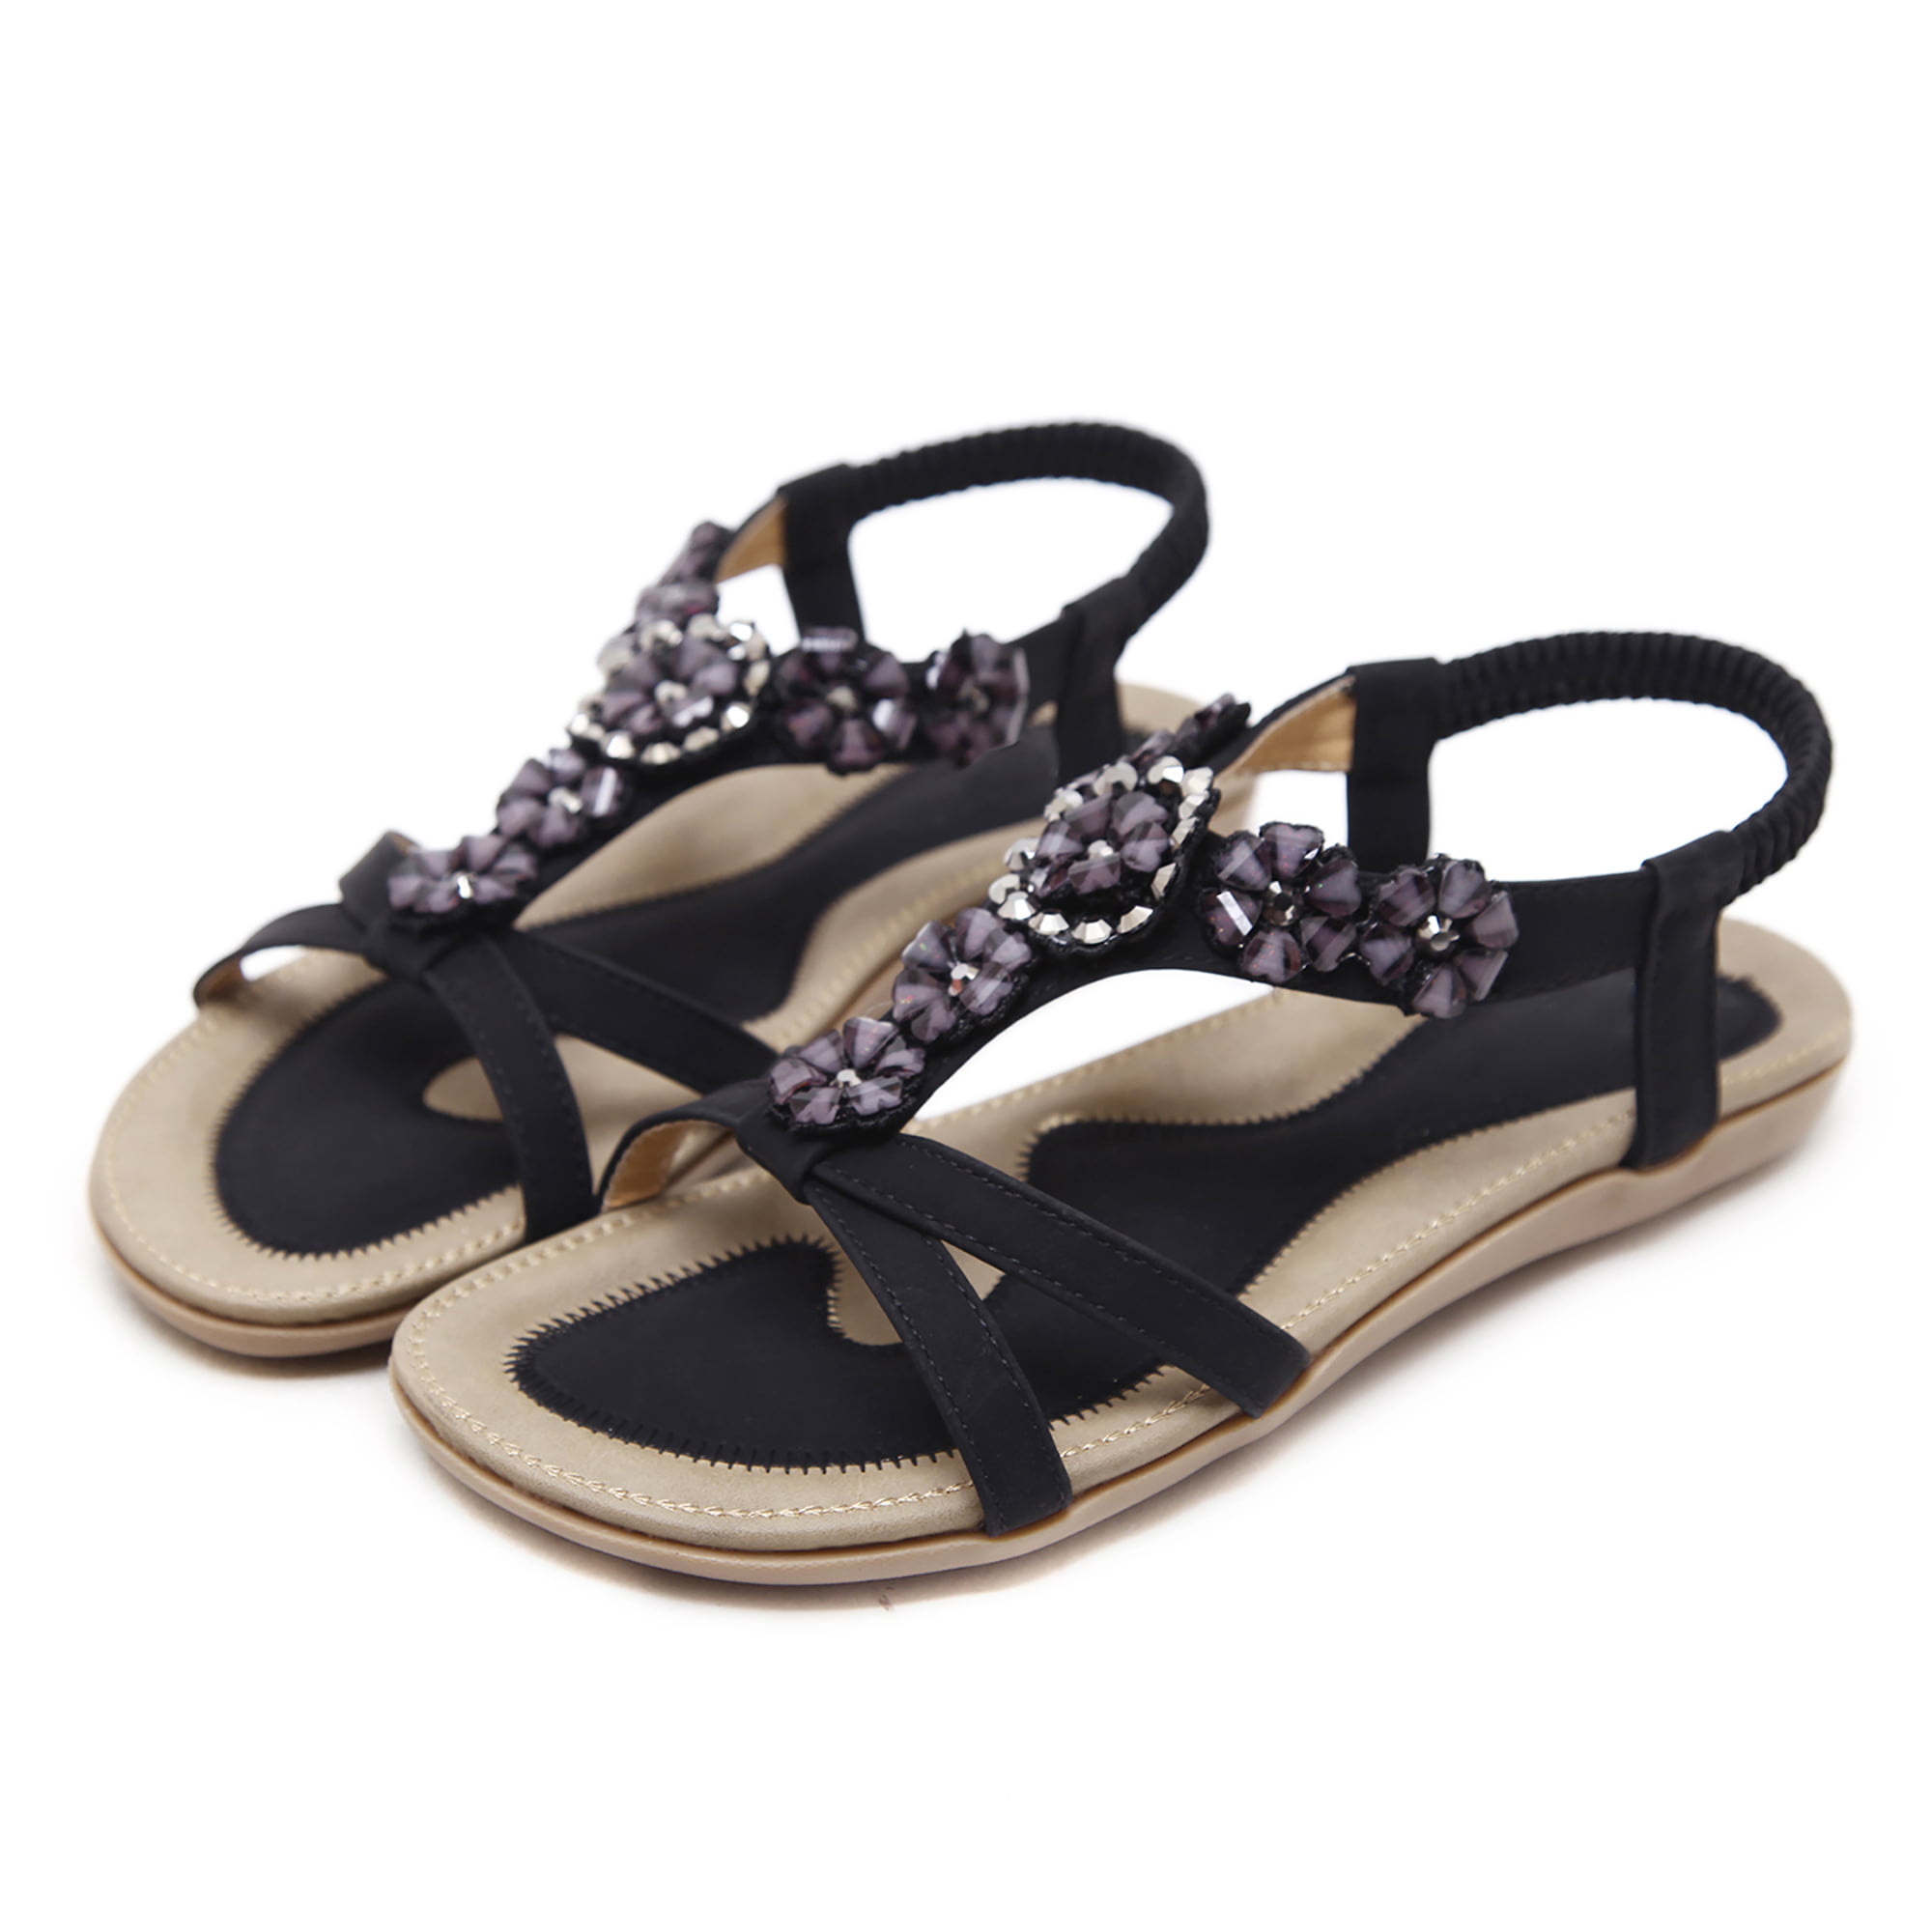 Kommuner Helt vildt Mægtig FAMITION Boho Flat Sandals for Women Casual Summer Beach Beaded Ankle Strap  Comfort Sandals Dress Shoes Black 7 - Walmart.com